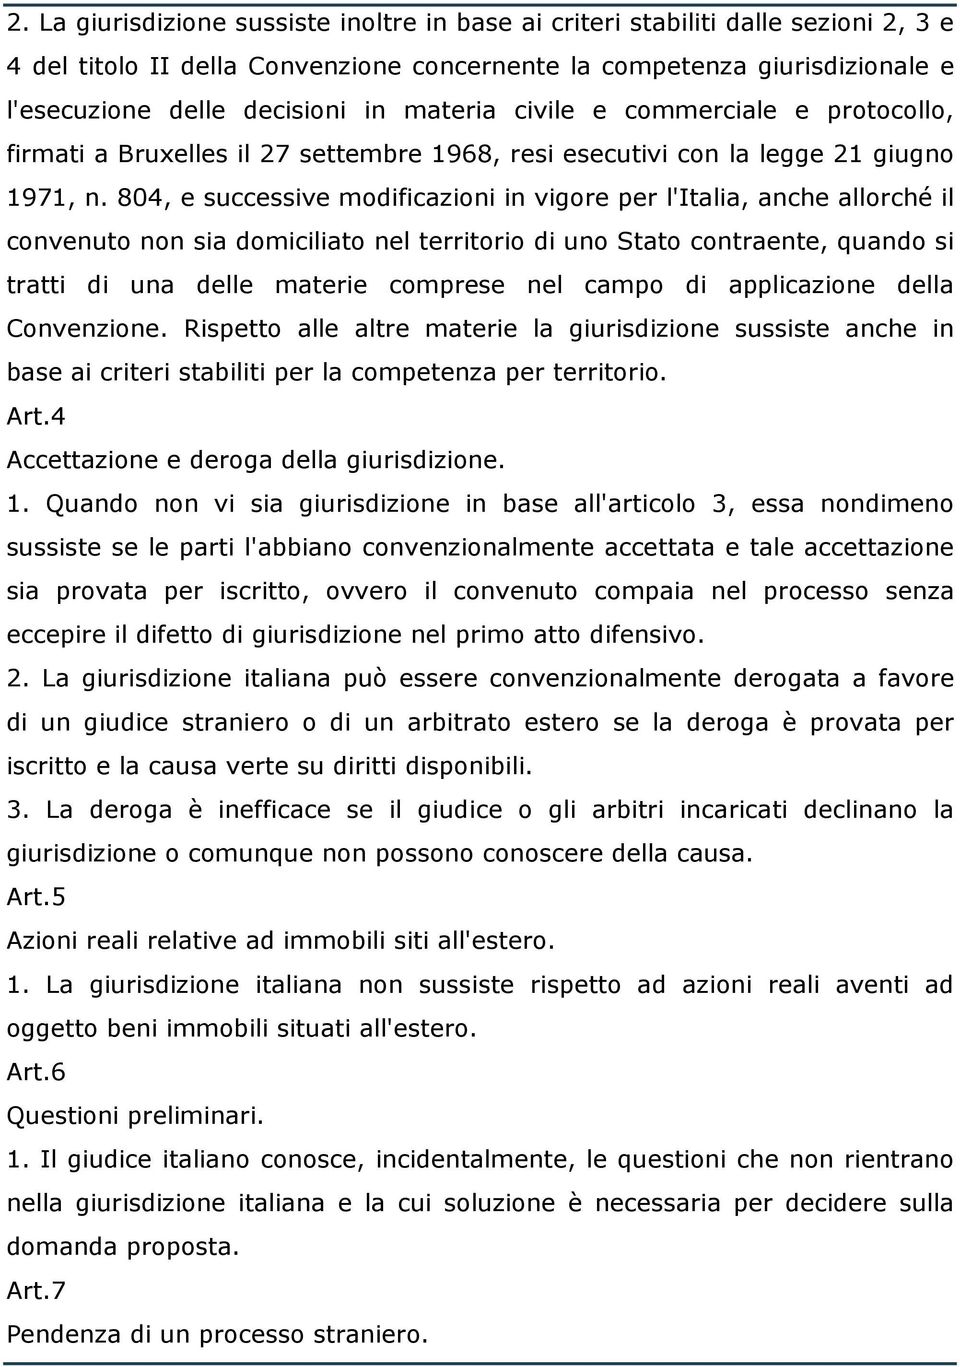 804, e successive modificazioni in vigore per l'italia, anche allorché il convenuto non sia domiciliato nel territorio di uno Stato contraente, quando si tratti di una delle materie comprese nel